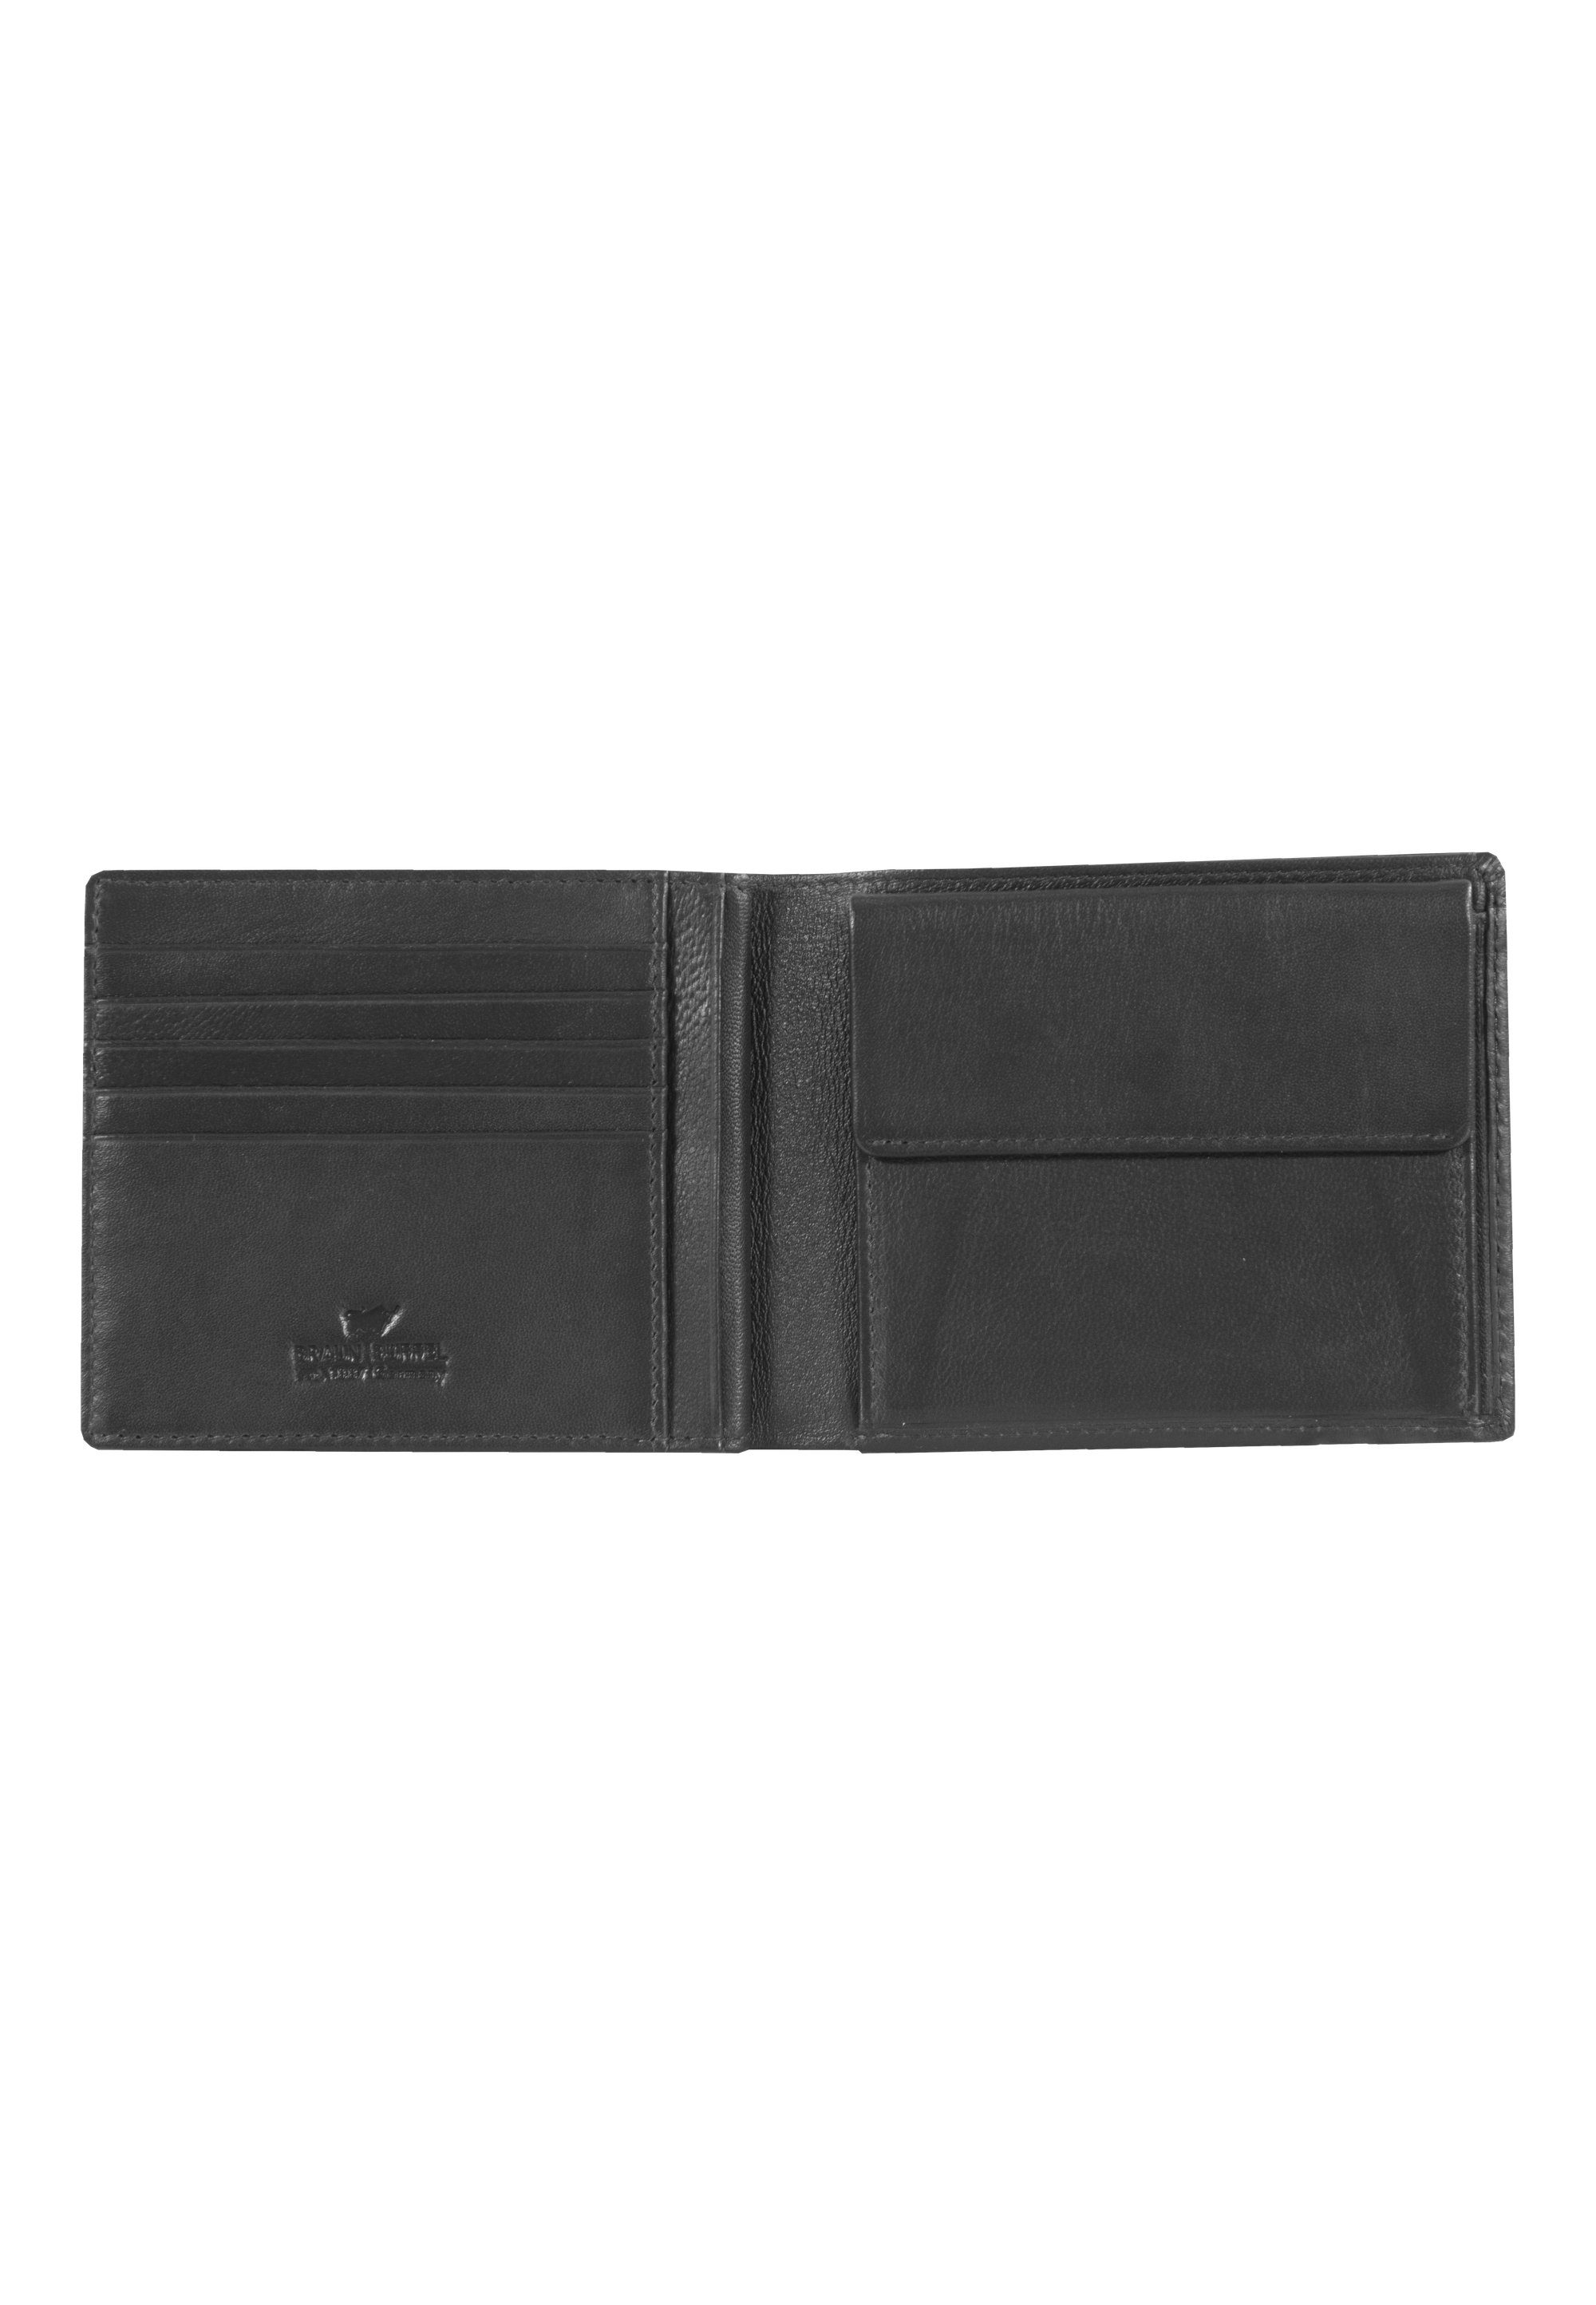 Braun Büffel Brieftasche mit Aufteilung HENRY, schwarz praktischer